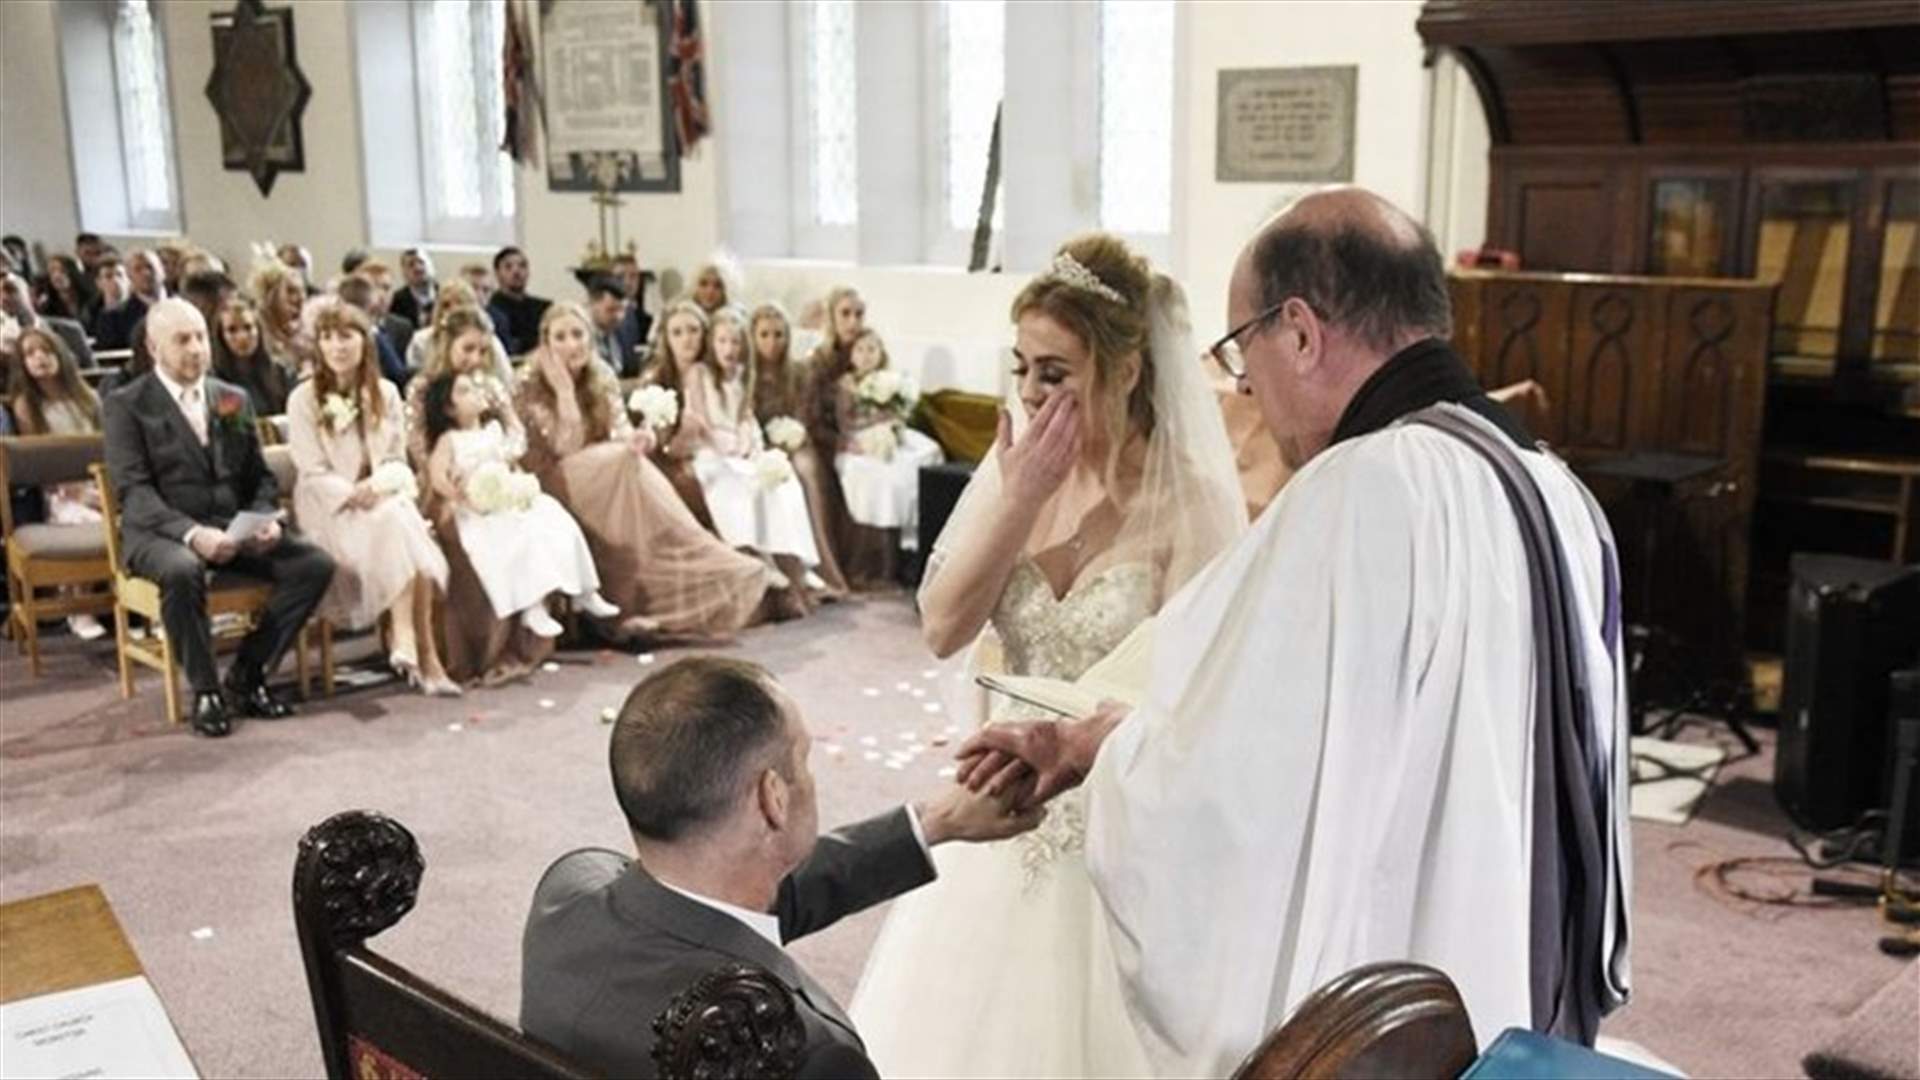 تزوّجا أمام أولادهما السبعة ليُحقّق العريس أمنيته الأخيرة... صور مؤثرة وثّقت حفل الزفاف (صور)